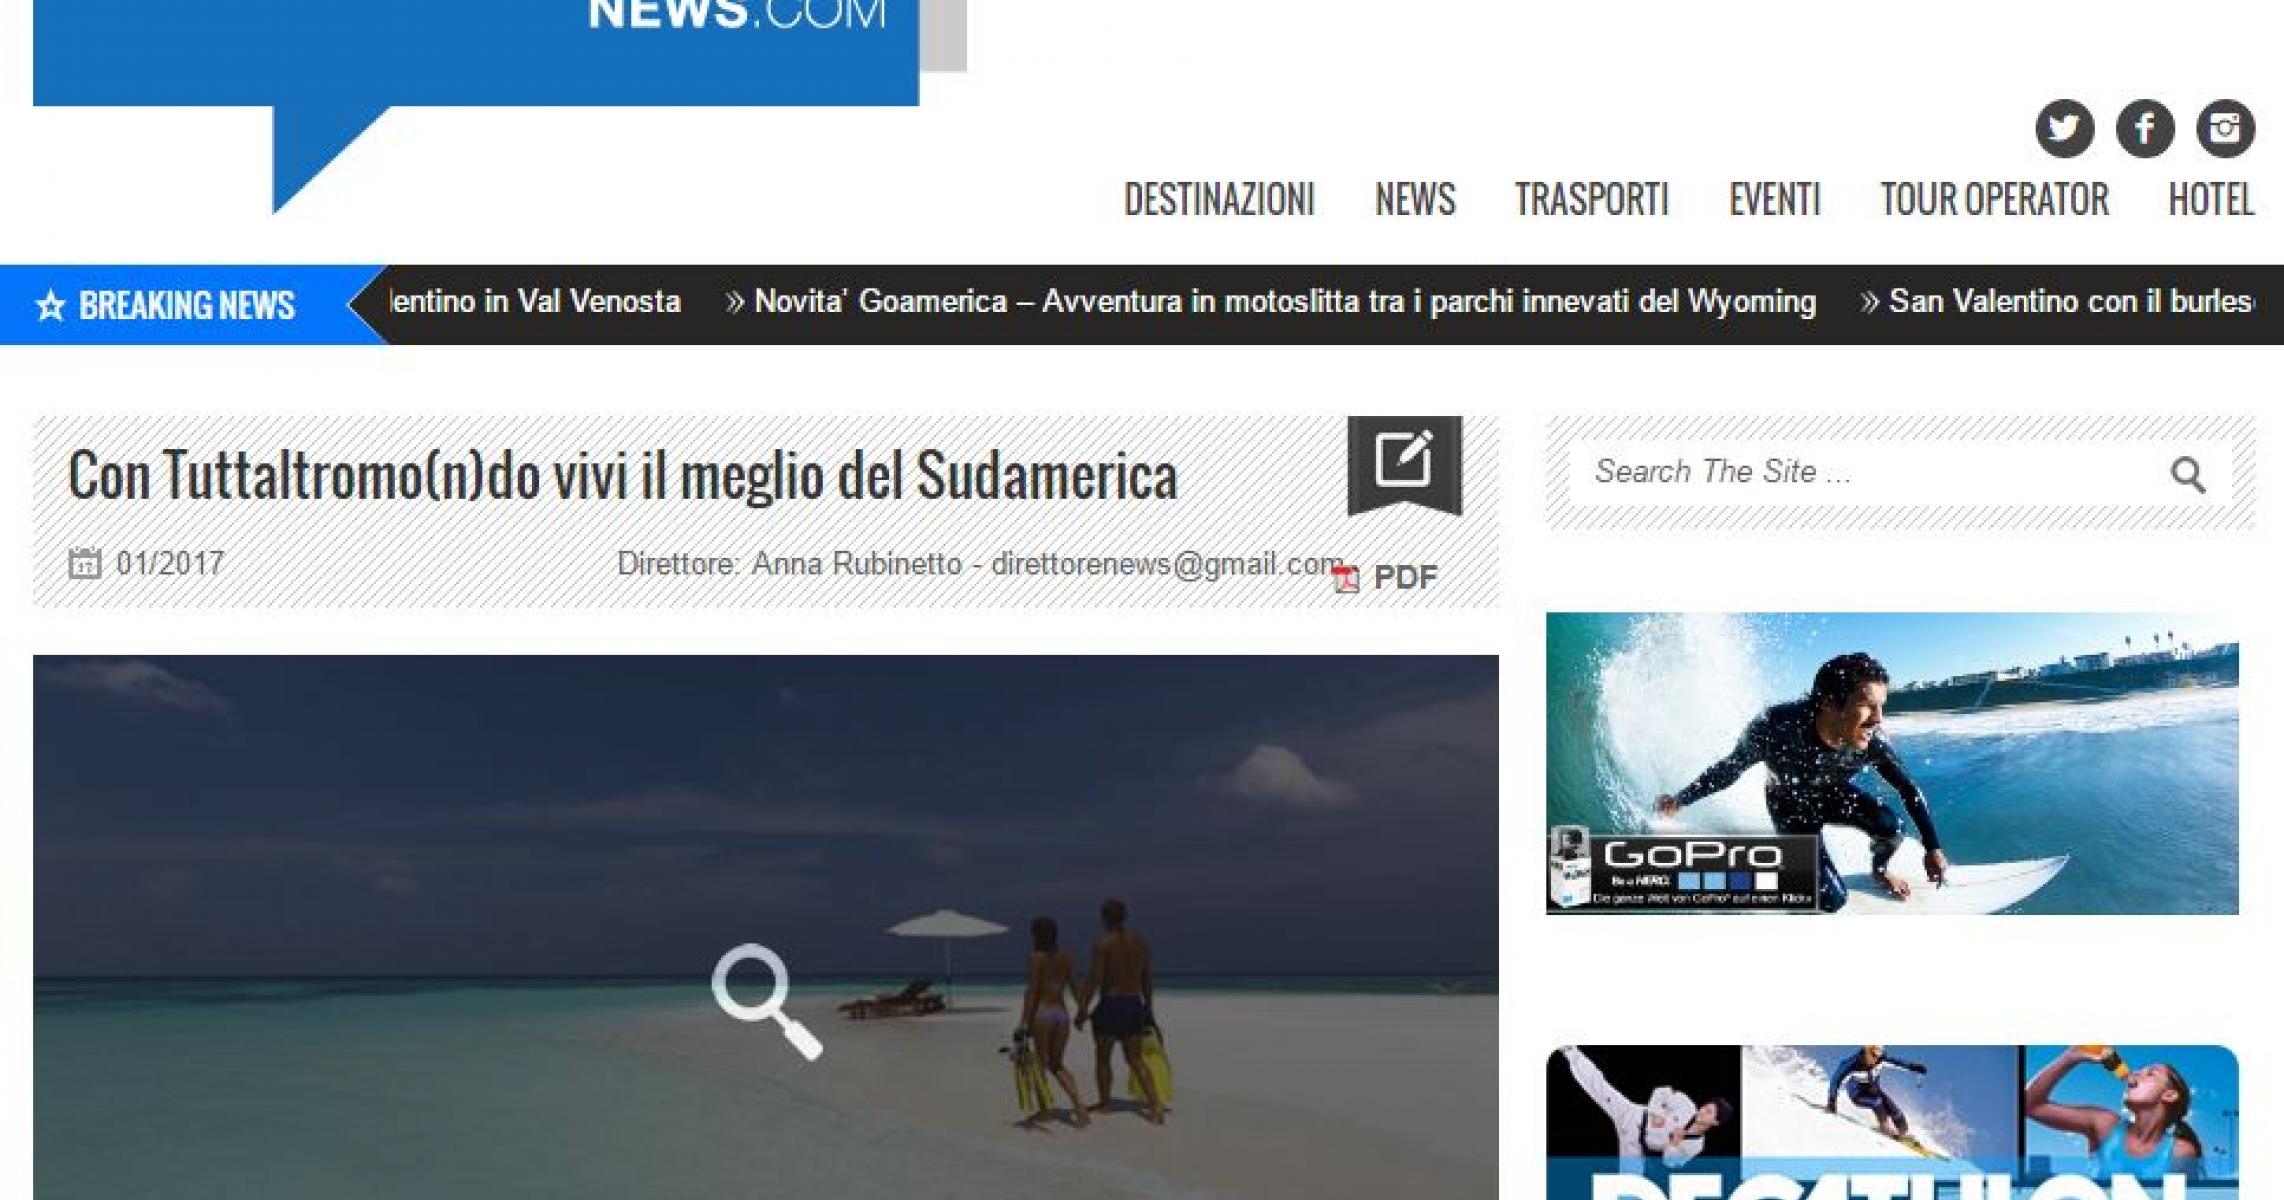 VIAGGIARE NEWS.COM: CON TUTTALTROMO(N)DO VIVI IL MEGLIO DEL SUDAMERICA